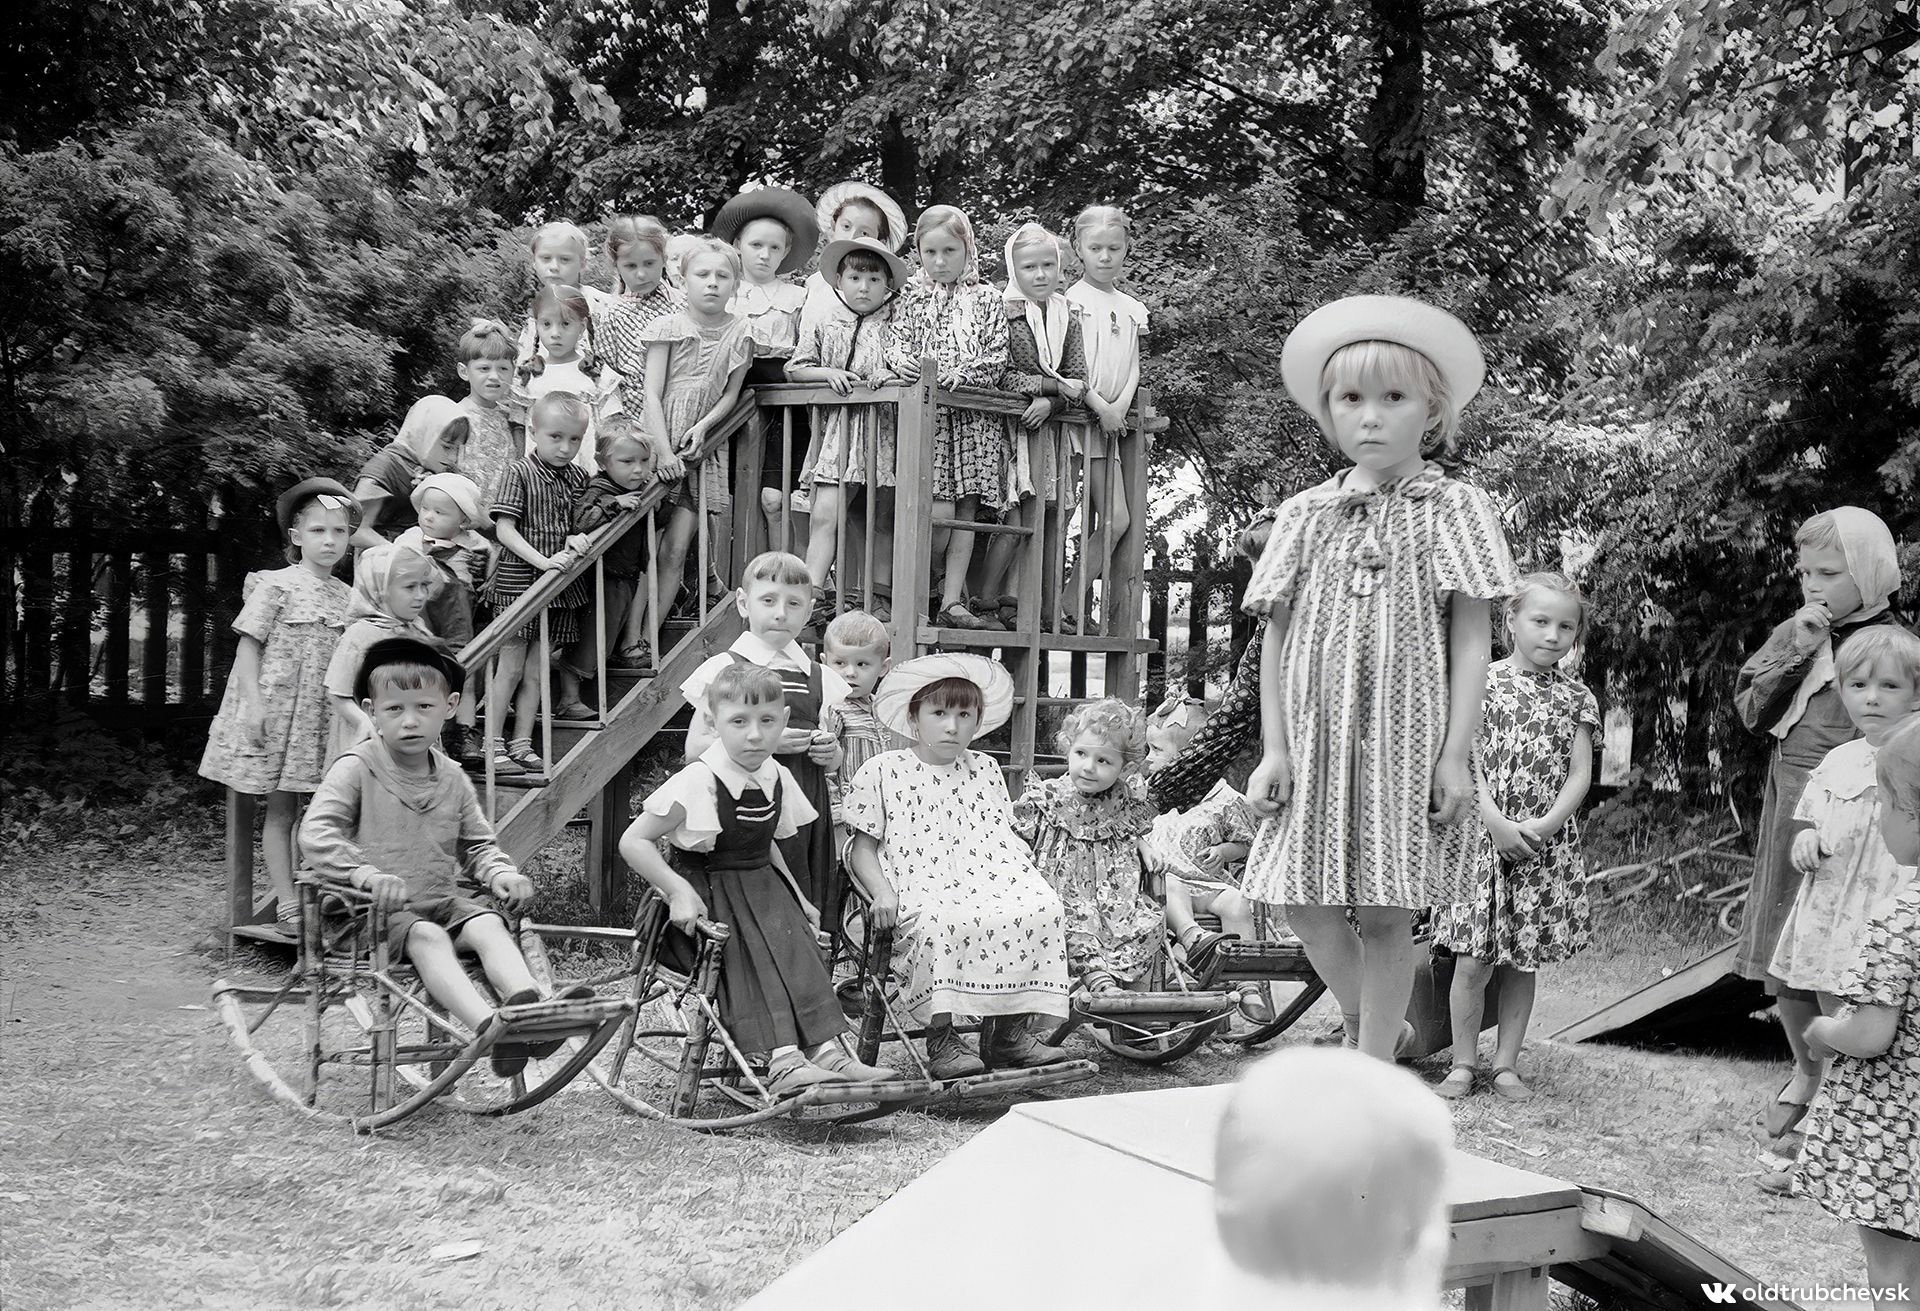 Опубликована фотография детской площадки в парке Трубчевска середины 50-х годов